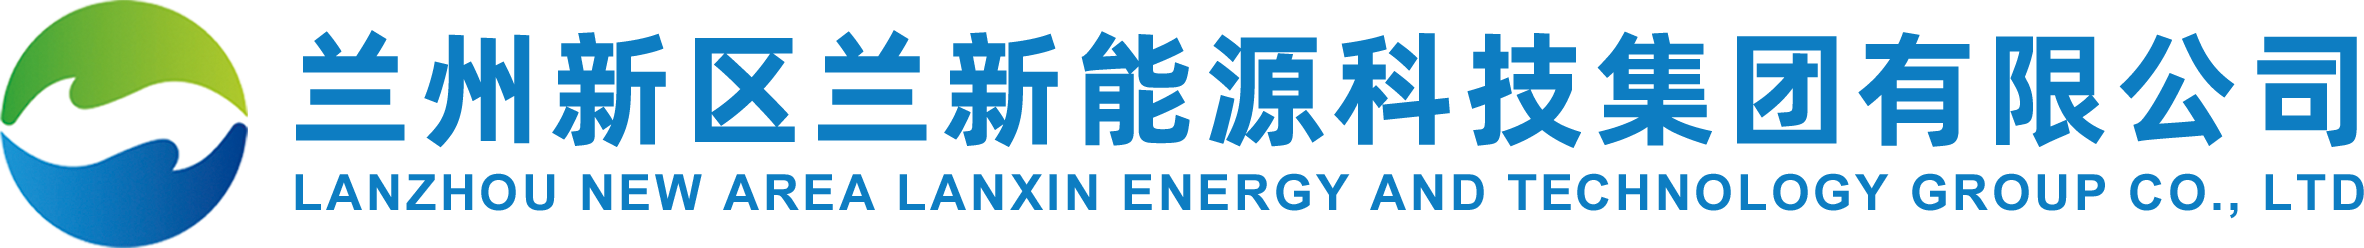 兰州新区兰新能源科技集团有限公司